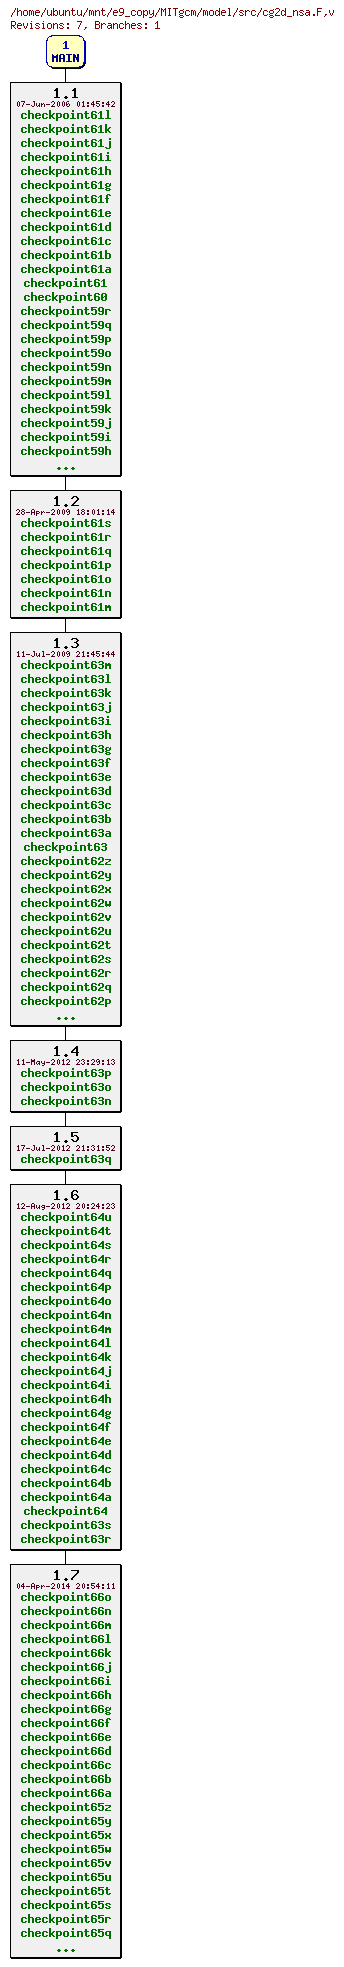 Revisions of MITgcm/model/src/cg2d_nsa.F